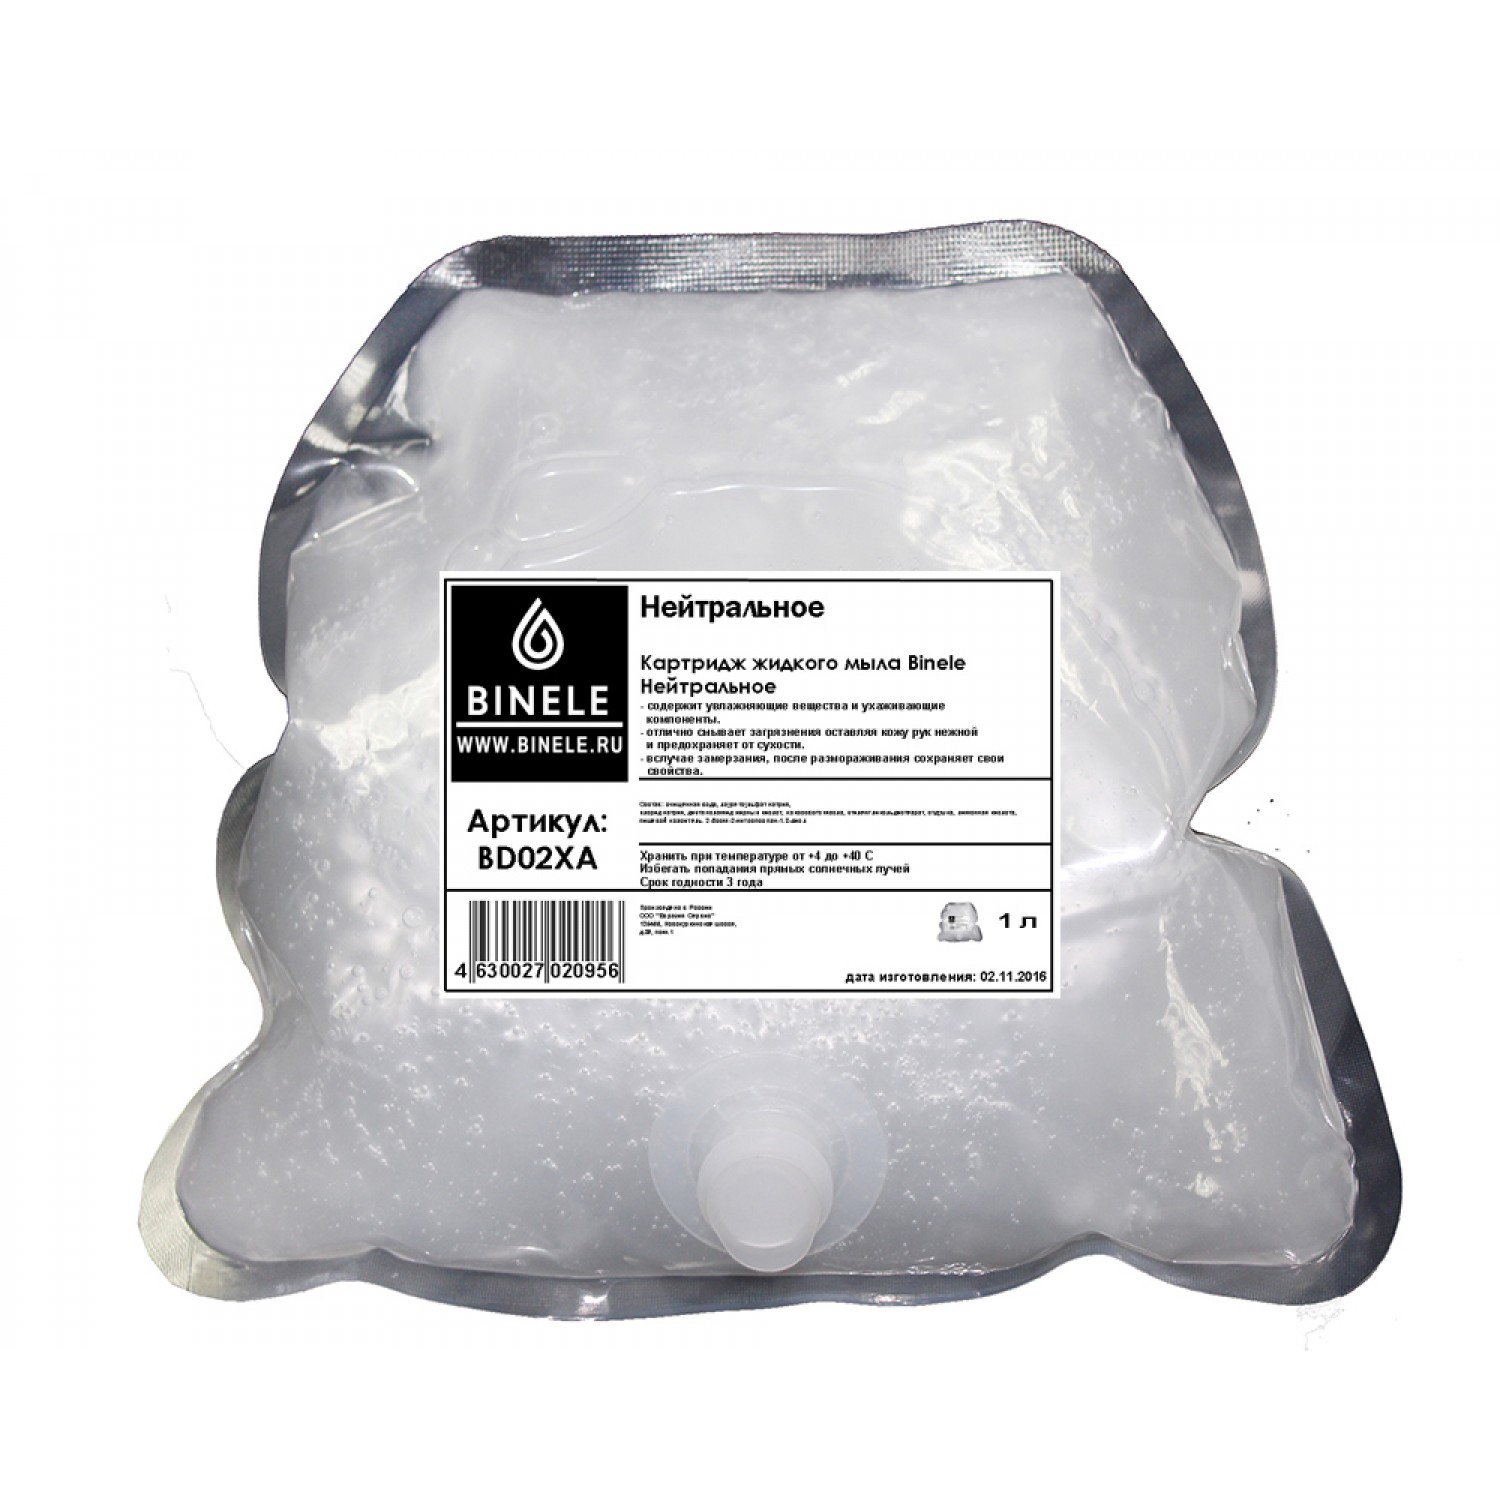 Комплект Картриджей жидкого мыла Binele Нейтральное BD04XA (2 шт по 1 л.)